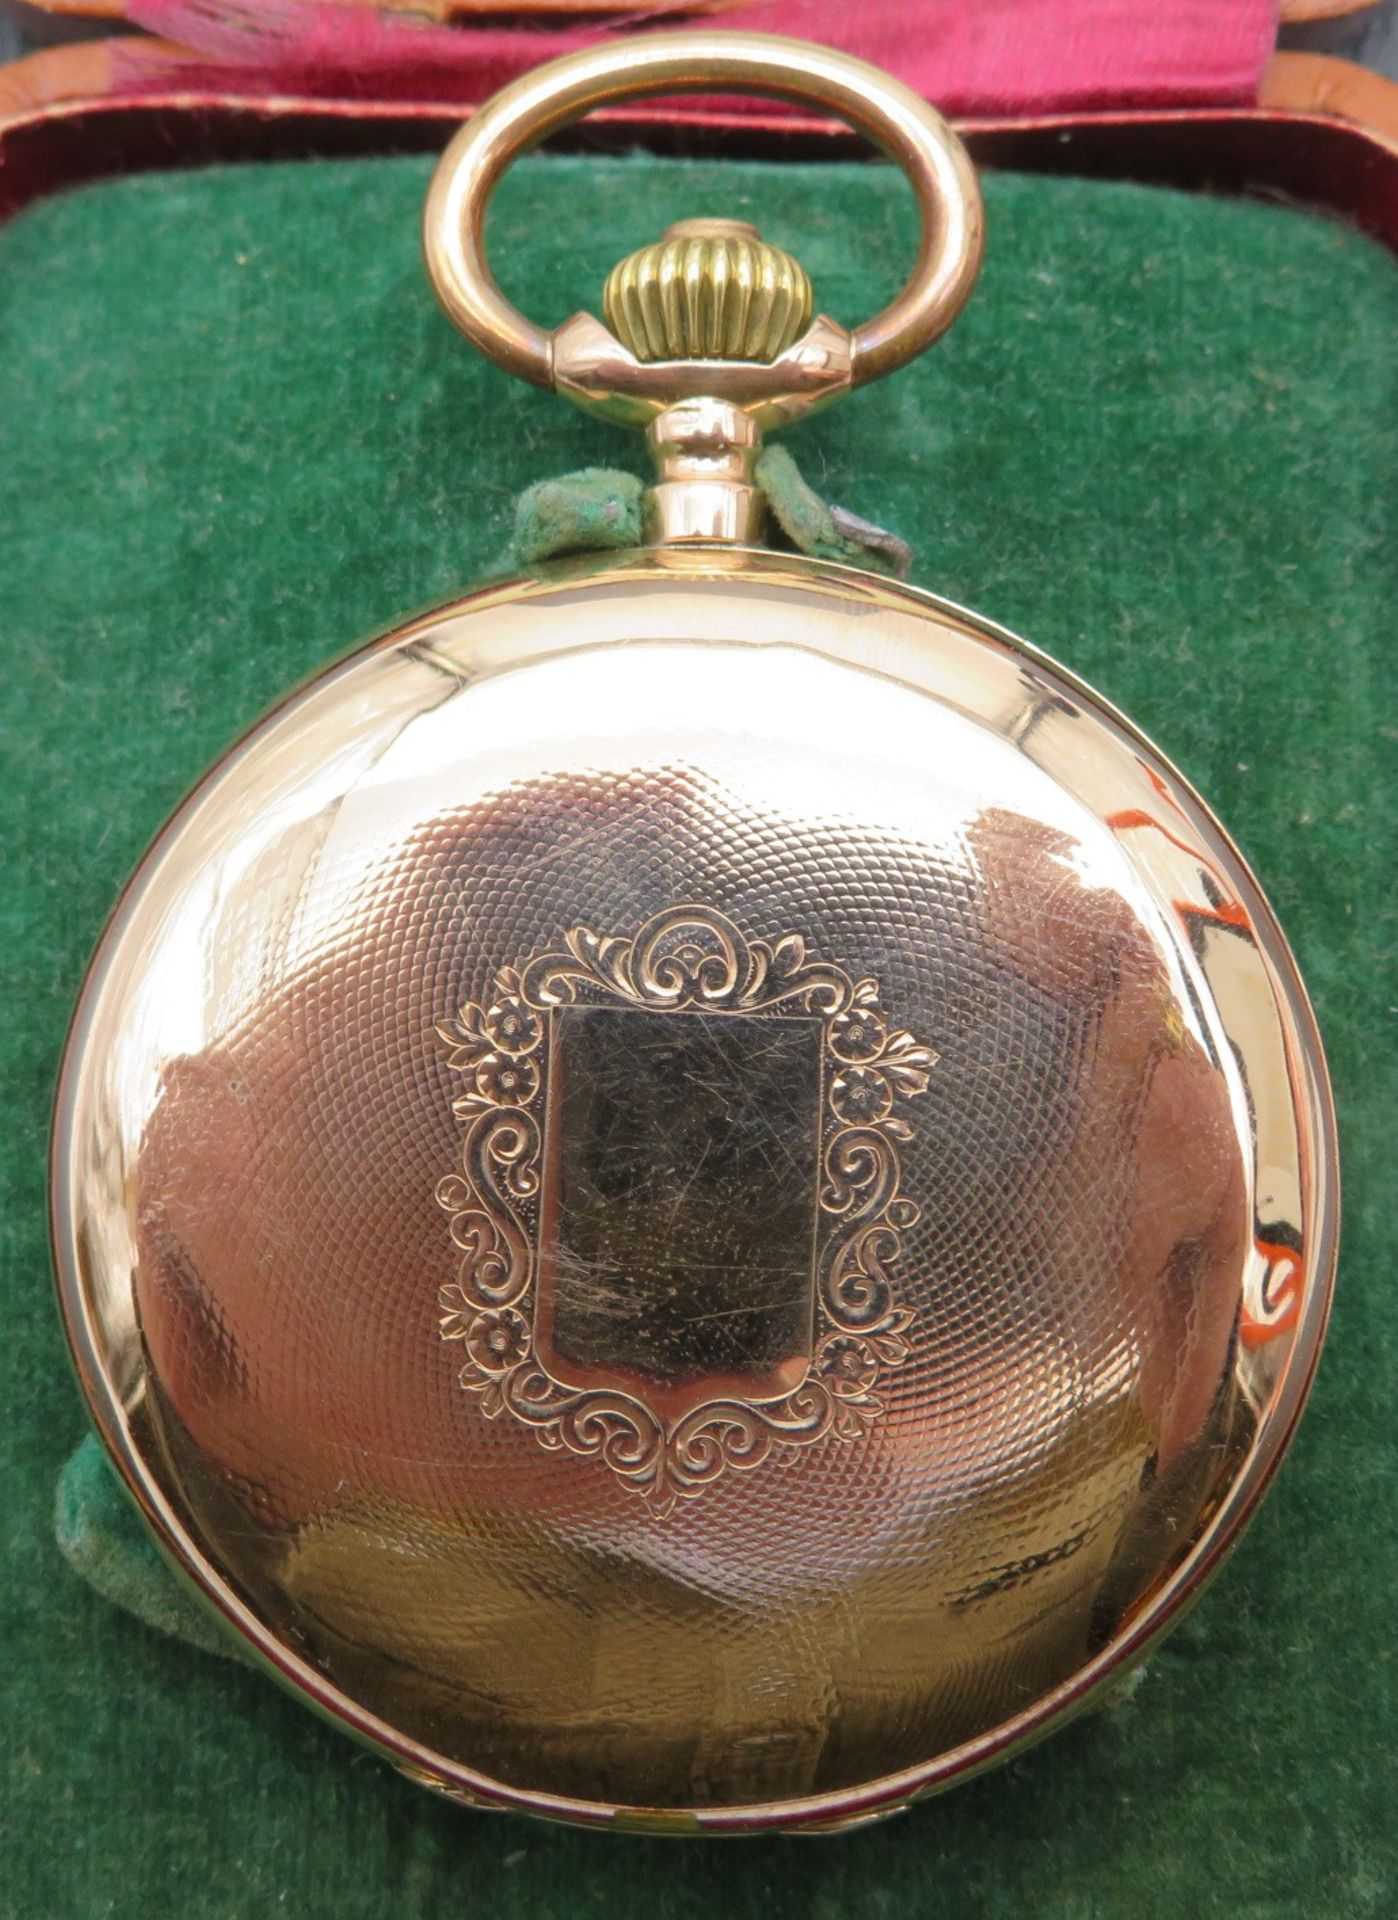 Sprungdeckeltaschenuhr, 19. Jahrhundert, Breguet Remontoir Nr. 78099, Gehäuse und Innendeckel Rotgo - Image 2 of 5